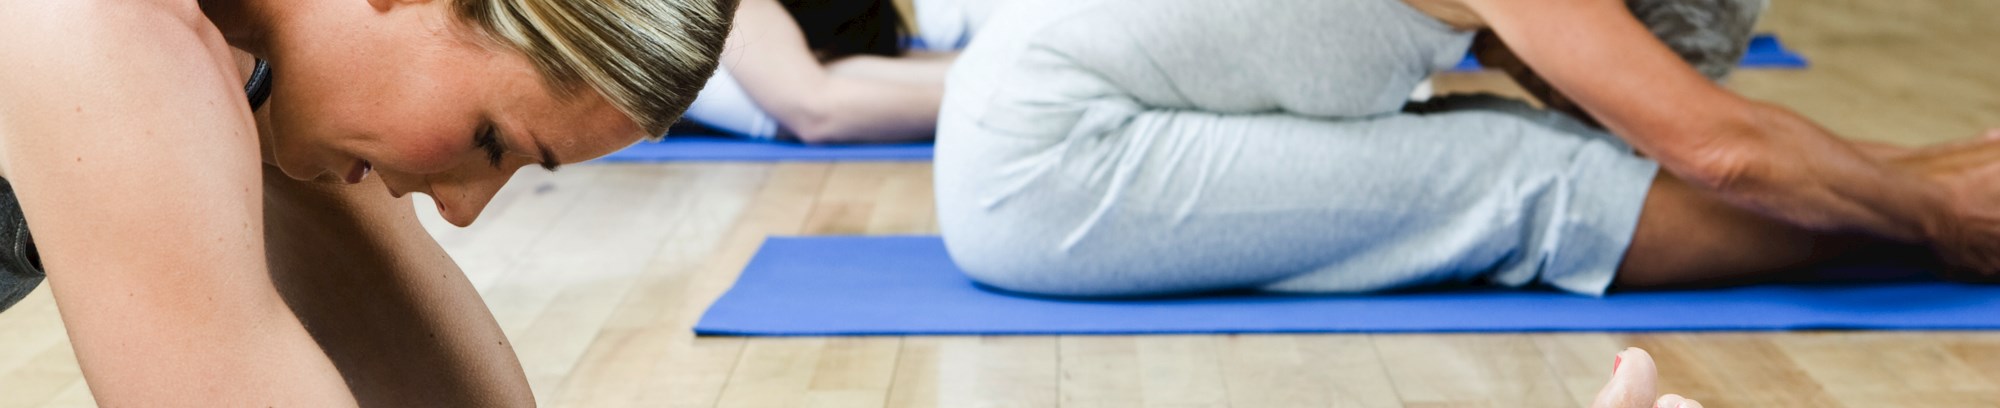 krop bevægelse smidighed styrke træning yoga